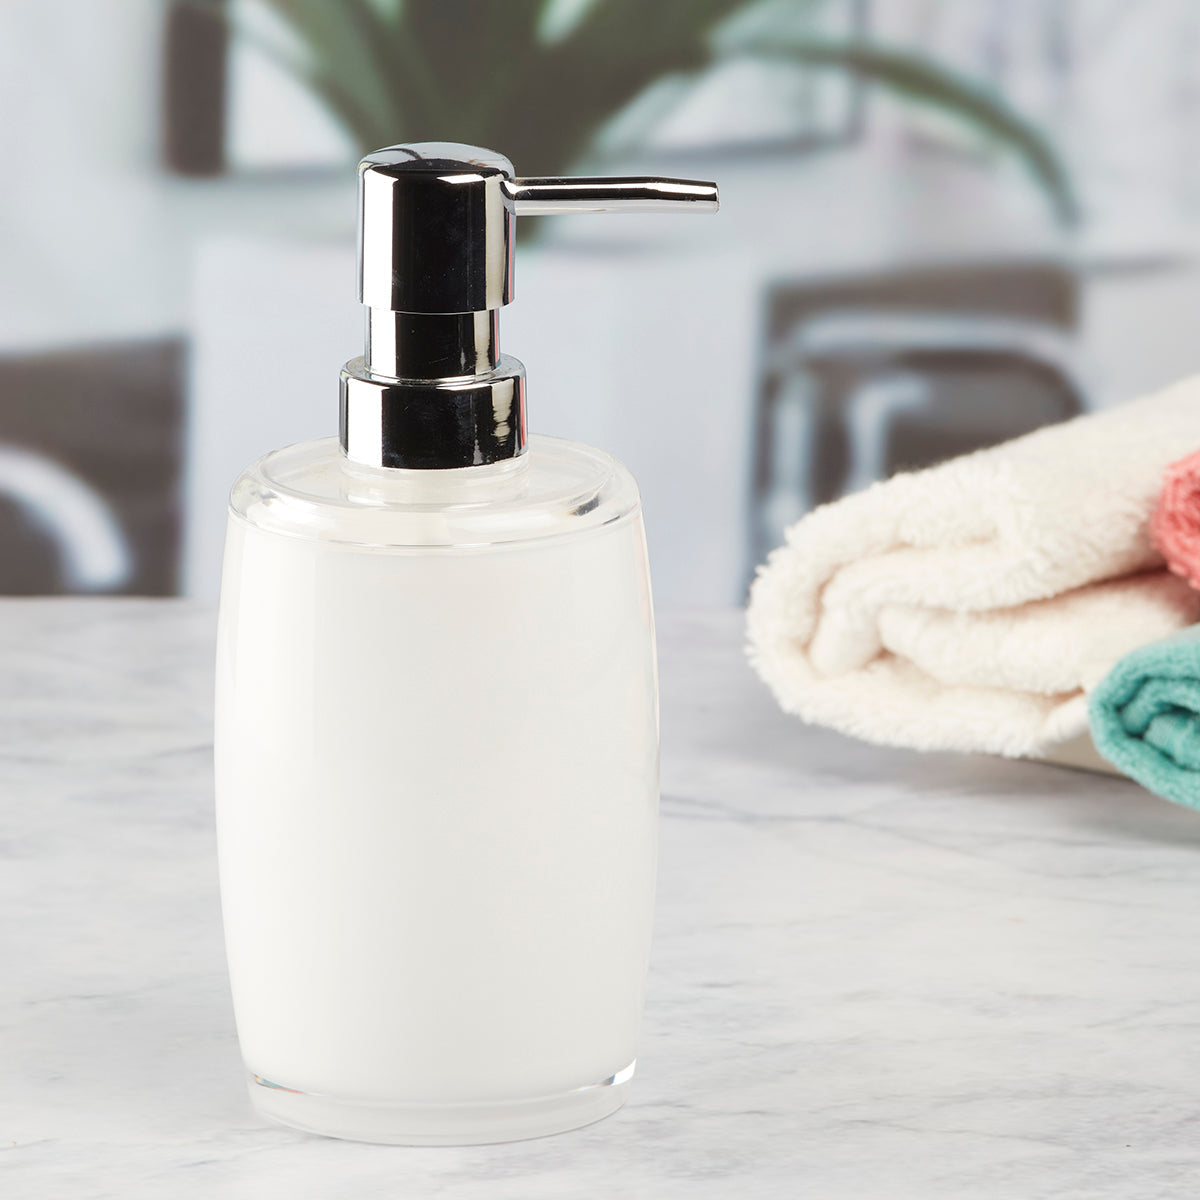 Acrylic Soap Dispenser Pump for Bathroom for Bath Gel, Lotion, Shampoo (8640)